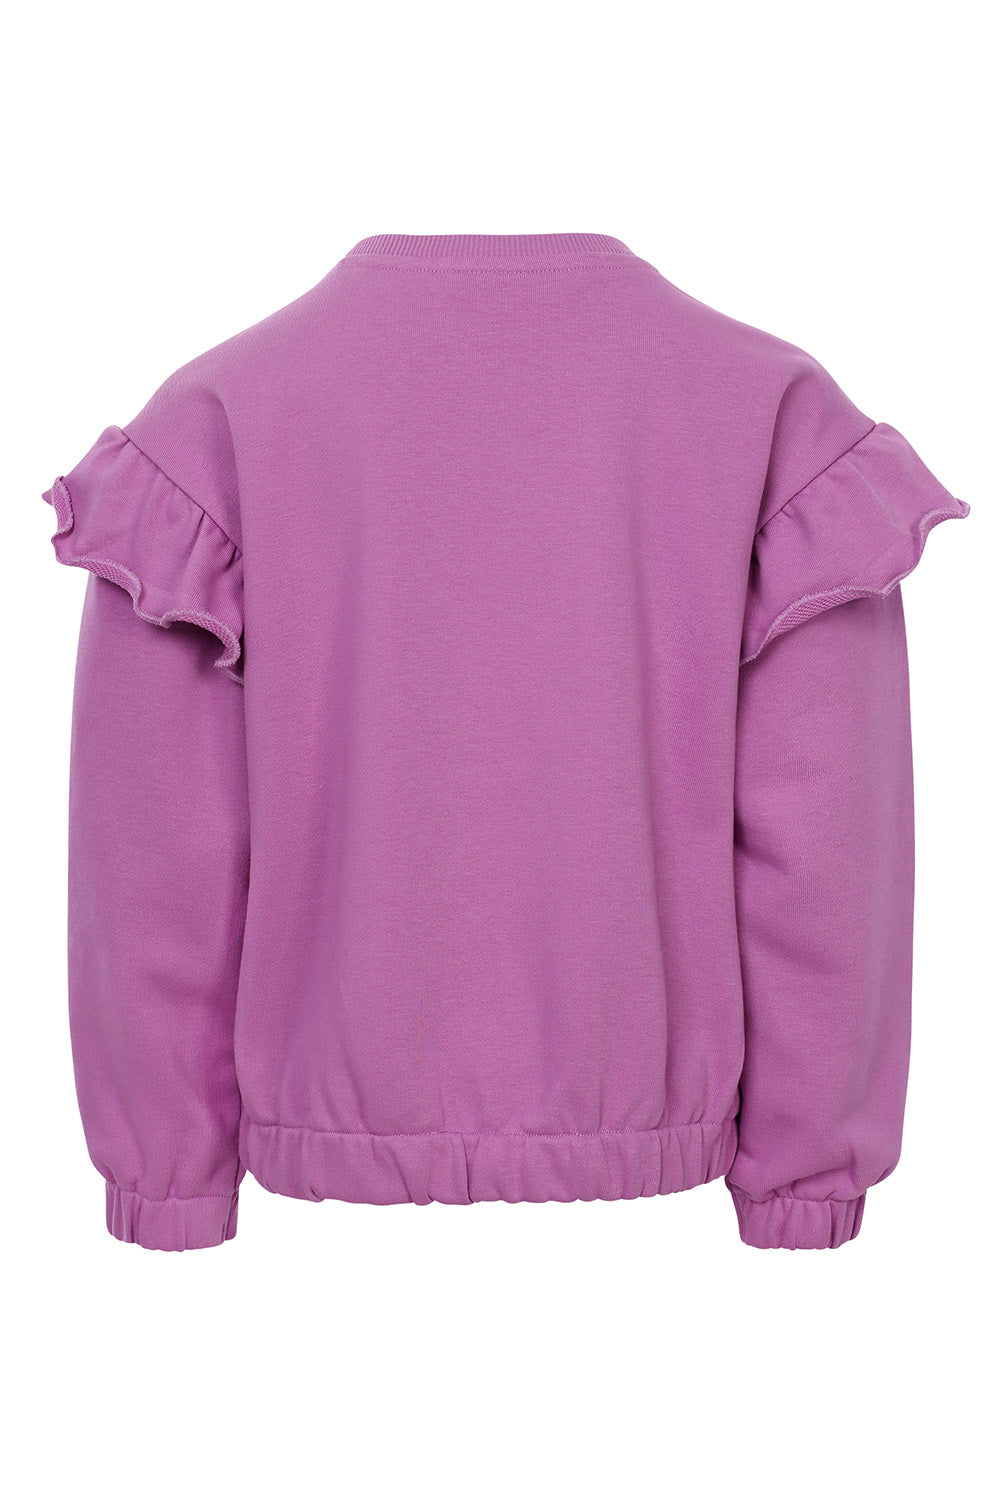 Meisjes Sweater van LOOXS Little in de kleur Purple Fuchsia in maat 128.